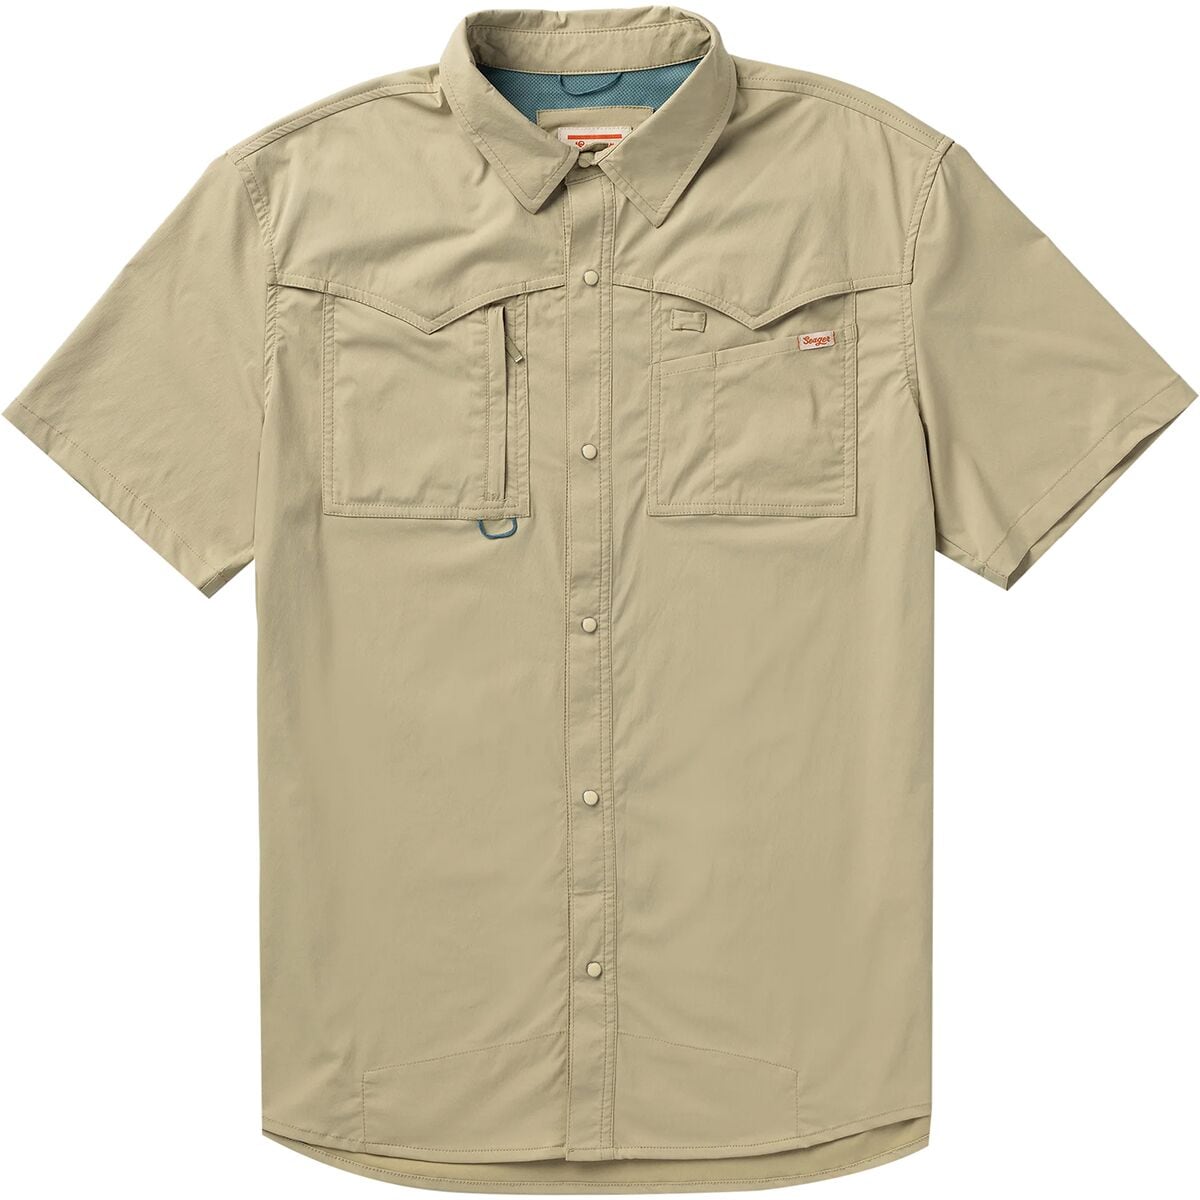 Seager Co. El Pescadore Short-Sleeve Shirt - Men's